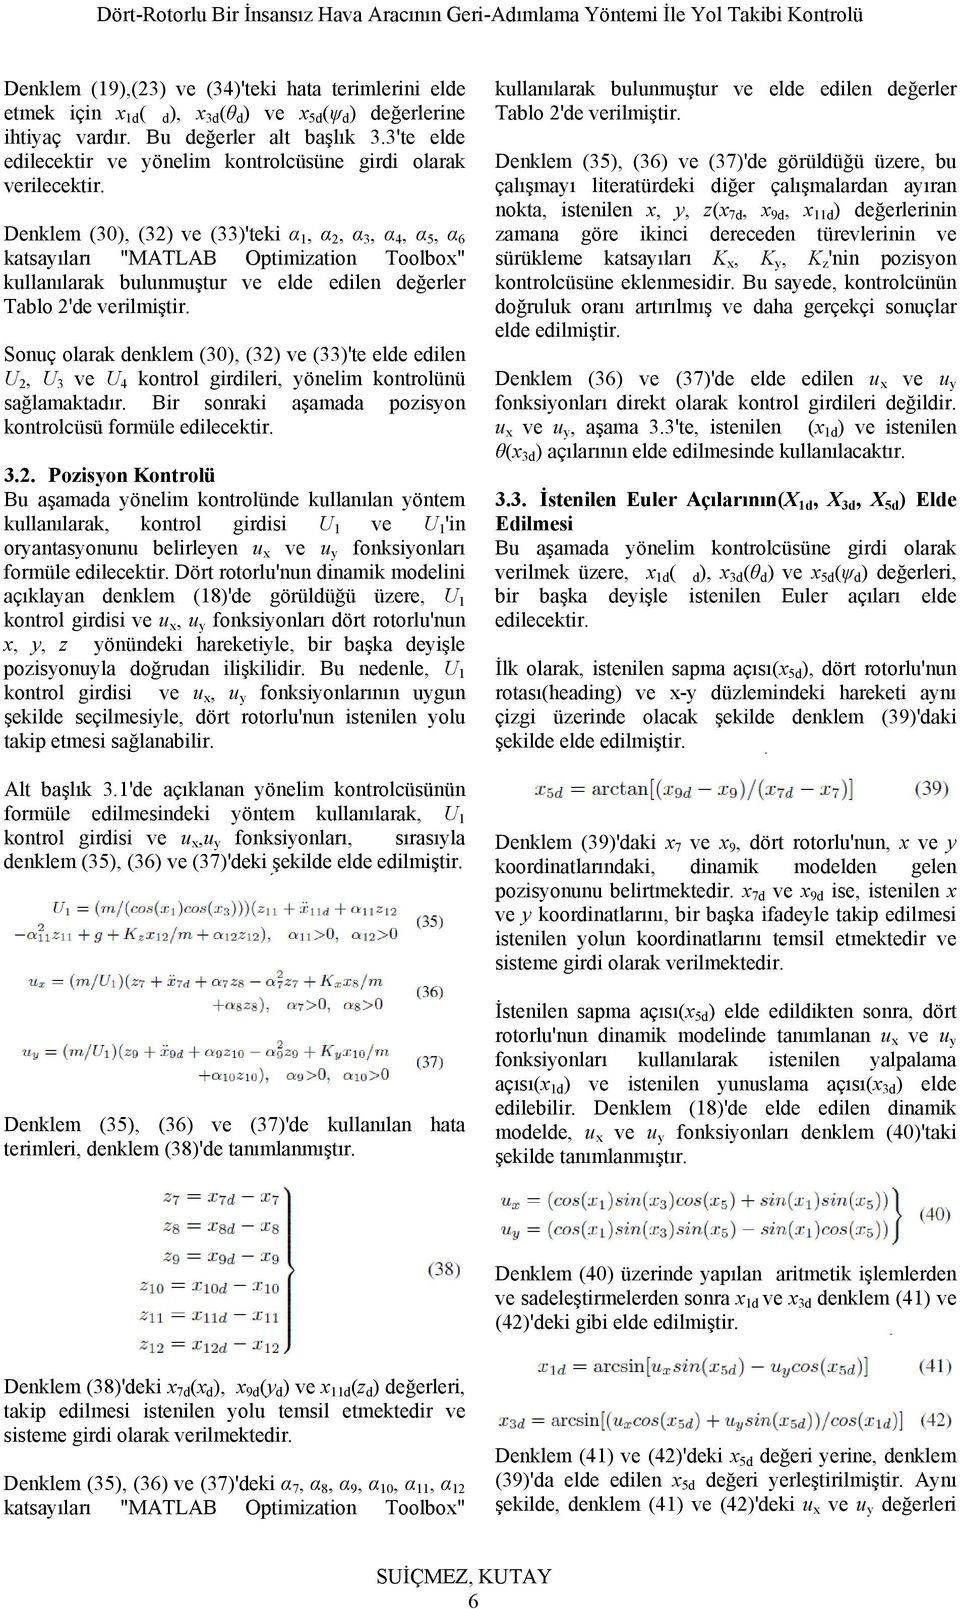 Denklem (30), (32) ve (33)'teki α 1, α 2, α 3, α 4, α 5, α 6 katsayıları "MATLAB Optimization Toolbox" kullanılarak bulunmuştur ve elde edilen değerler Tablo 2'de verilmiştir.